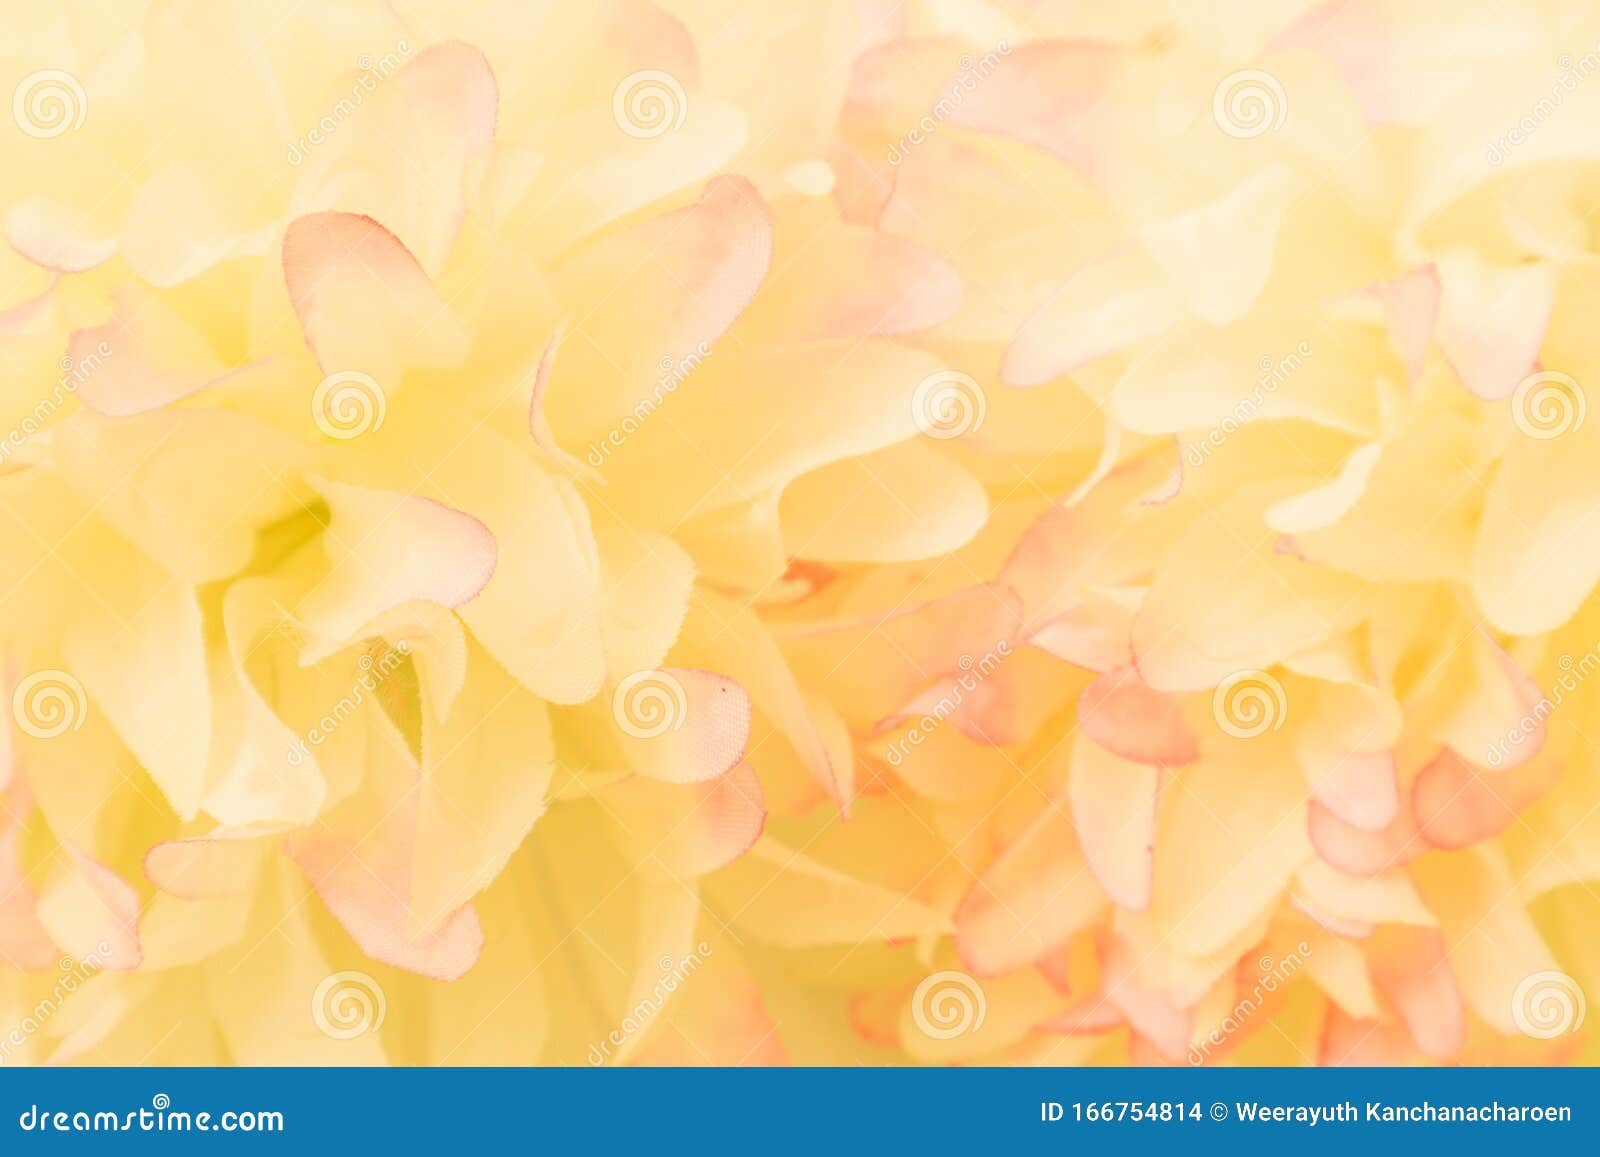 Các loại hoa màu hồng và vàng trên nền trắng tạo ra một bức tranh thật tuyệt vời! Màu sắc tươi sáng của hoa khiến chúng trở thành điểm nhấn đặc biệt trong không gian sống của bạn. Những chiếc hoa này sẽ giúp cho gia đình bạn tận hưởng những giây phút thư giãn sau một ngày dài.